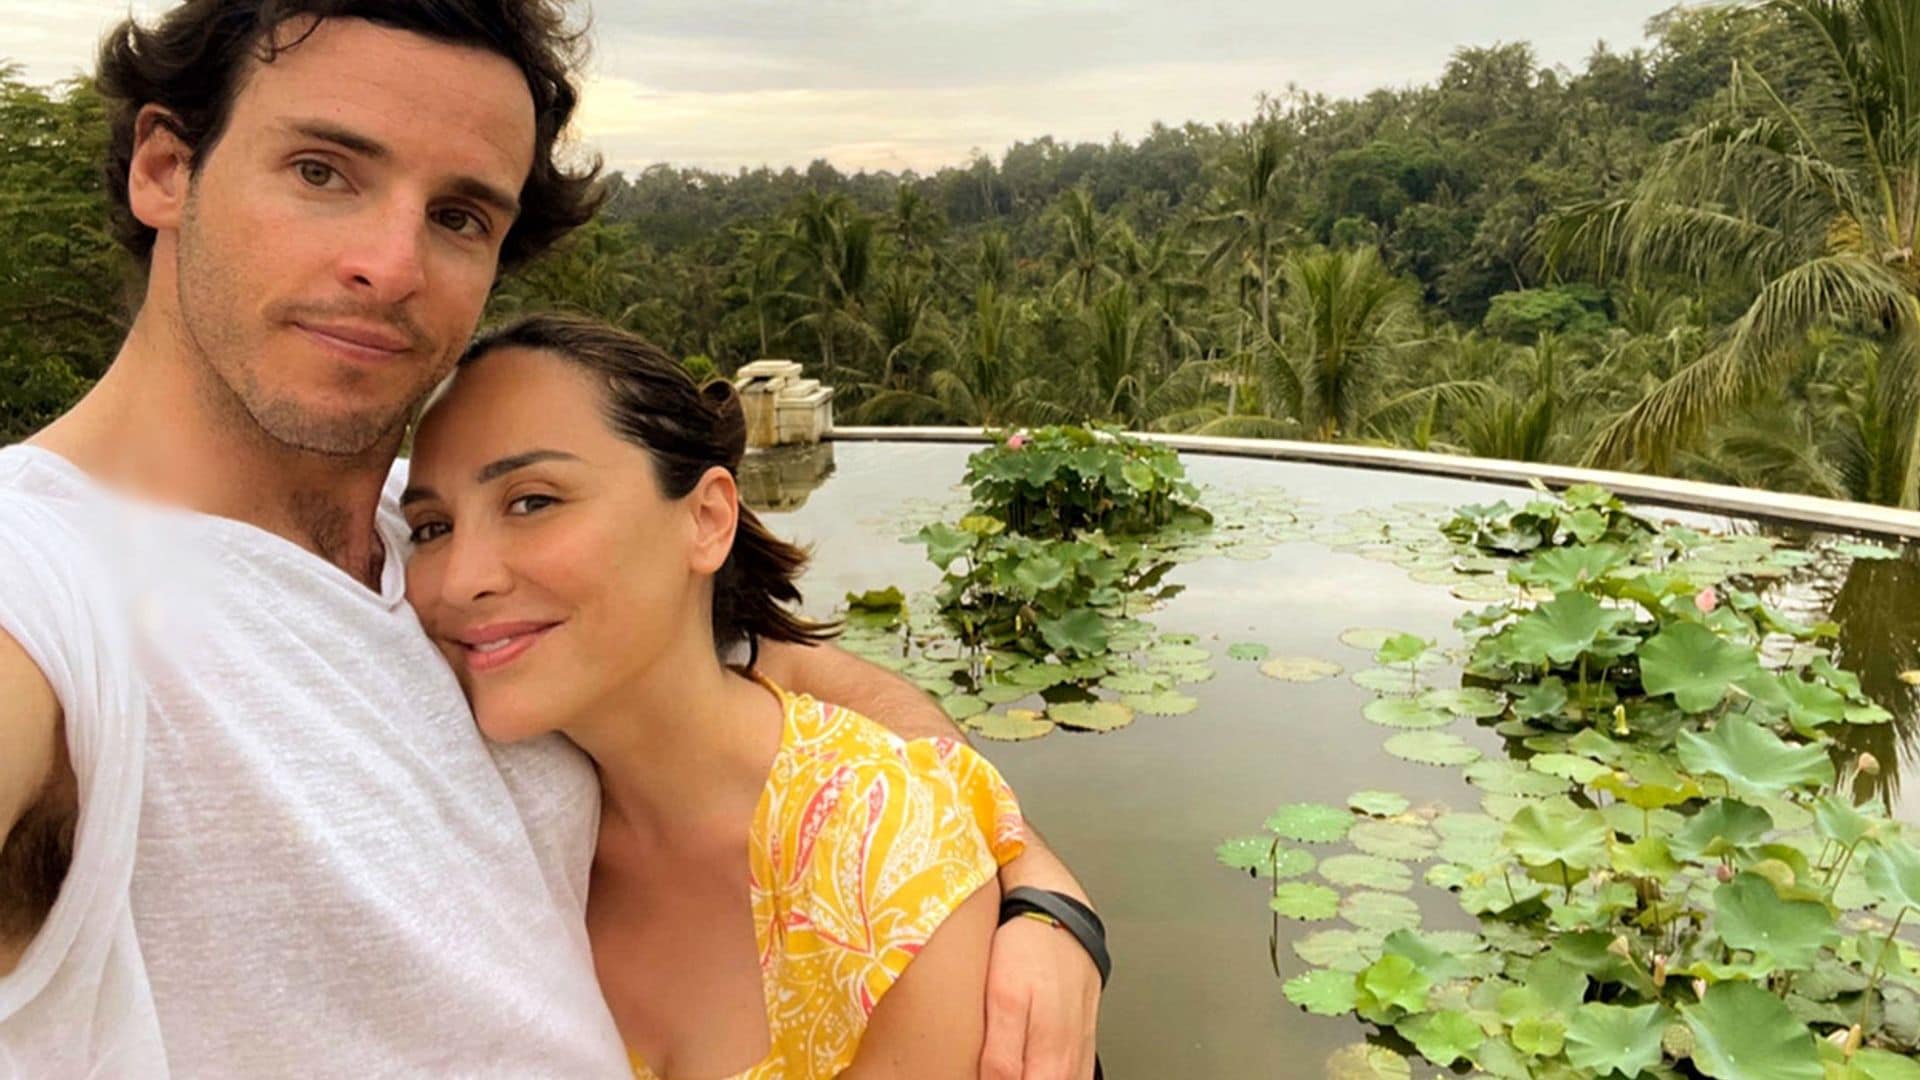 El impresionante viaje a Bali de Tamara Falcó e Iñigo Onieva, cargado de amor y romanticismo